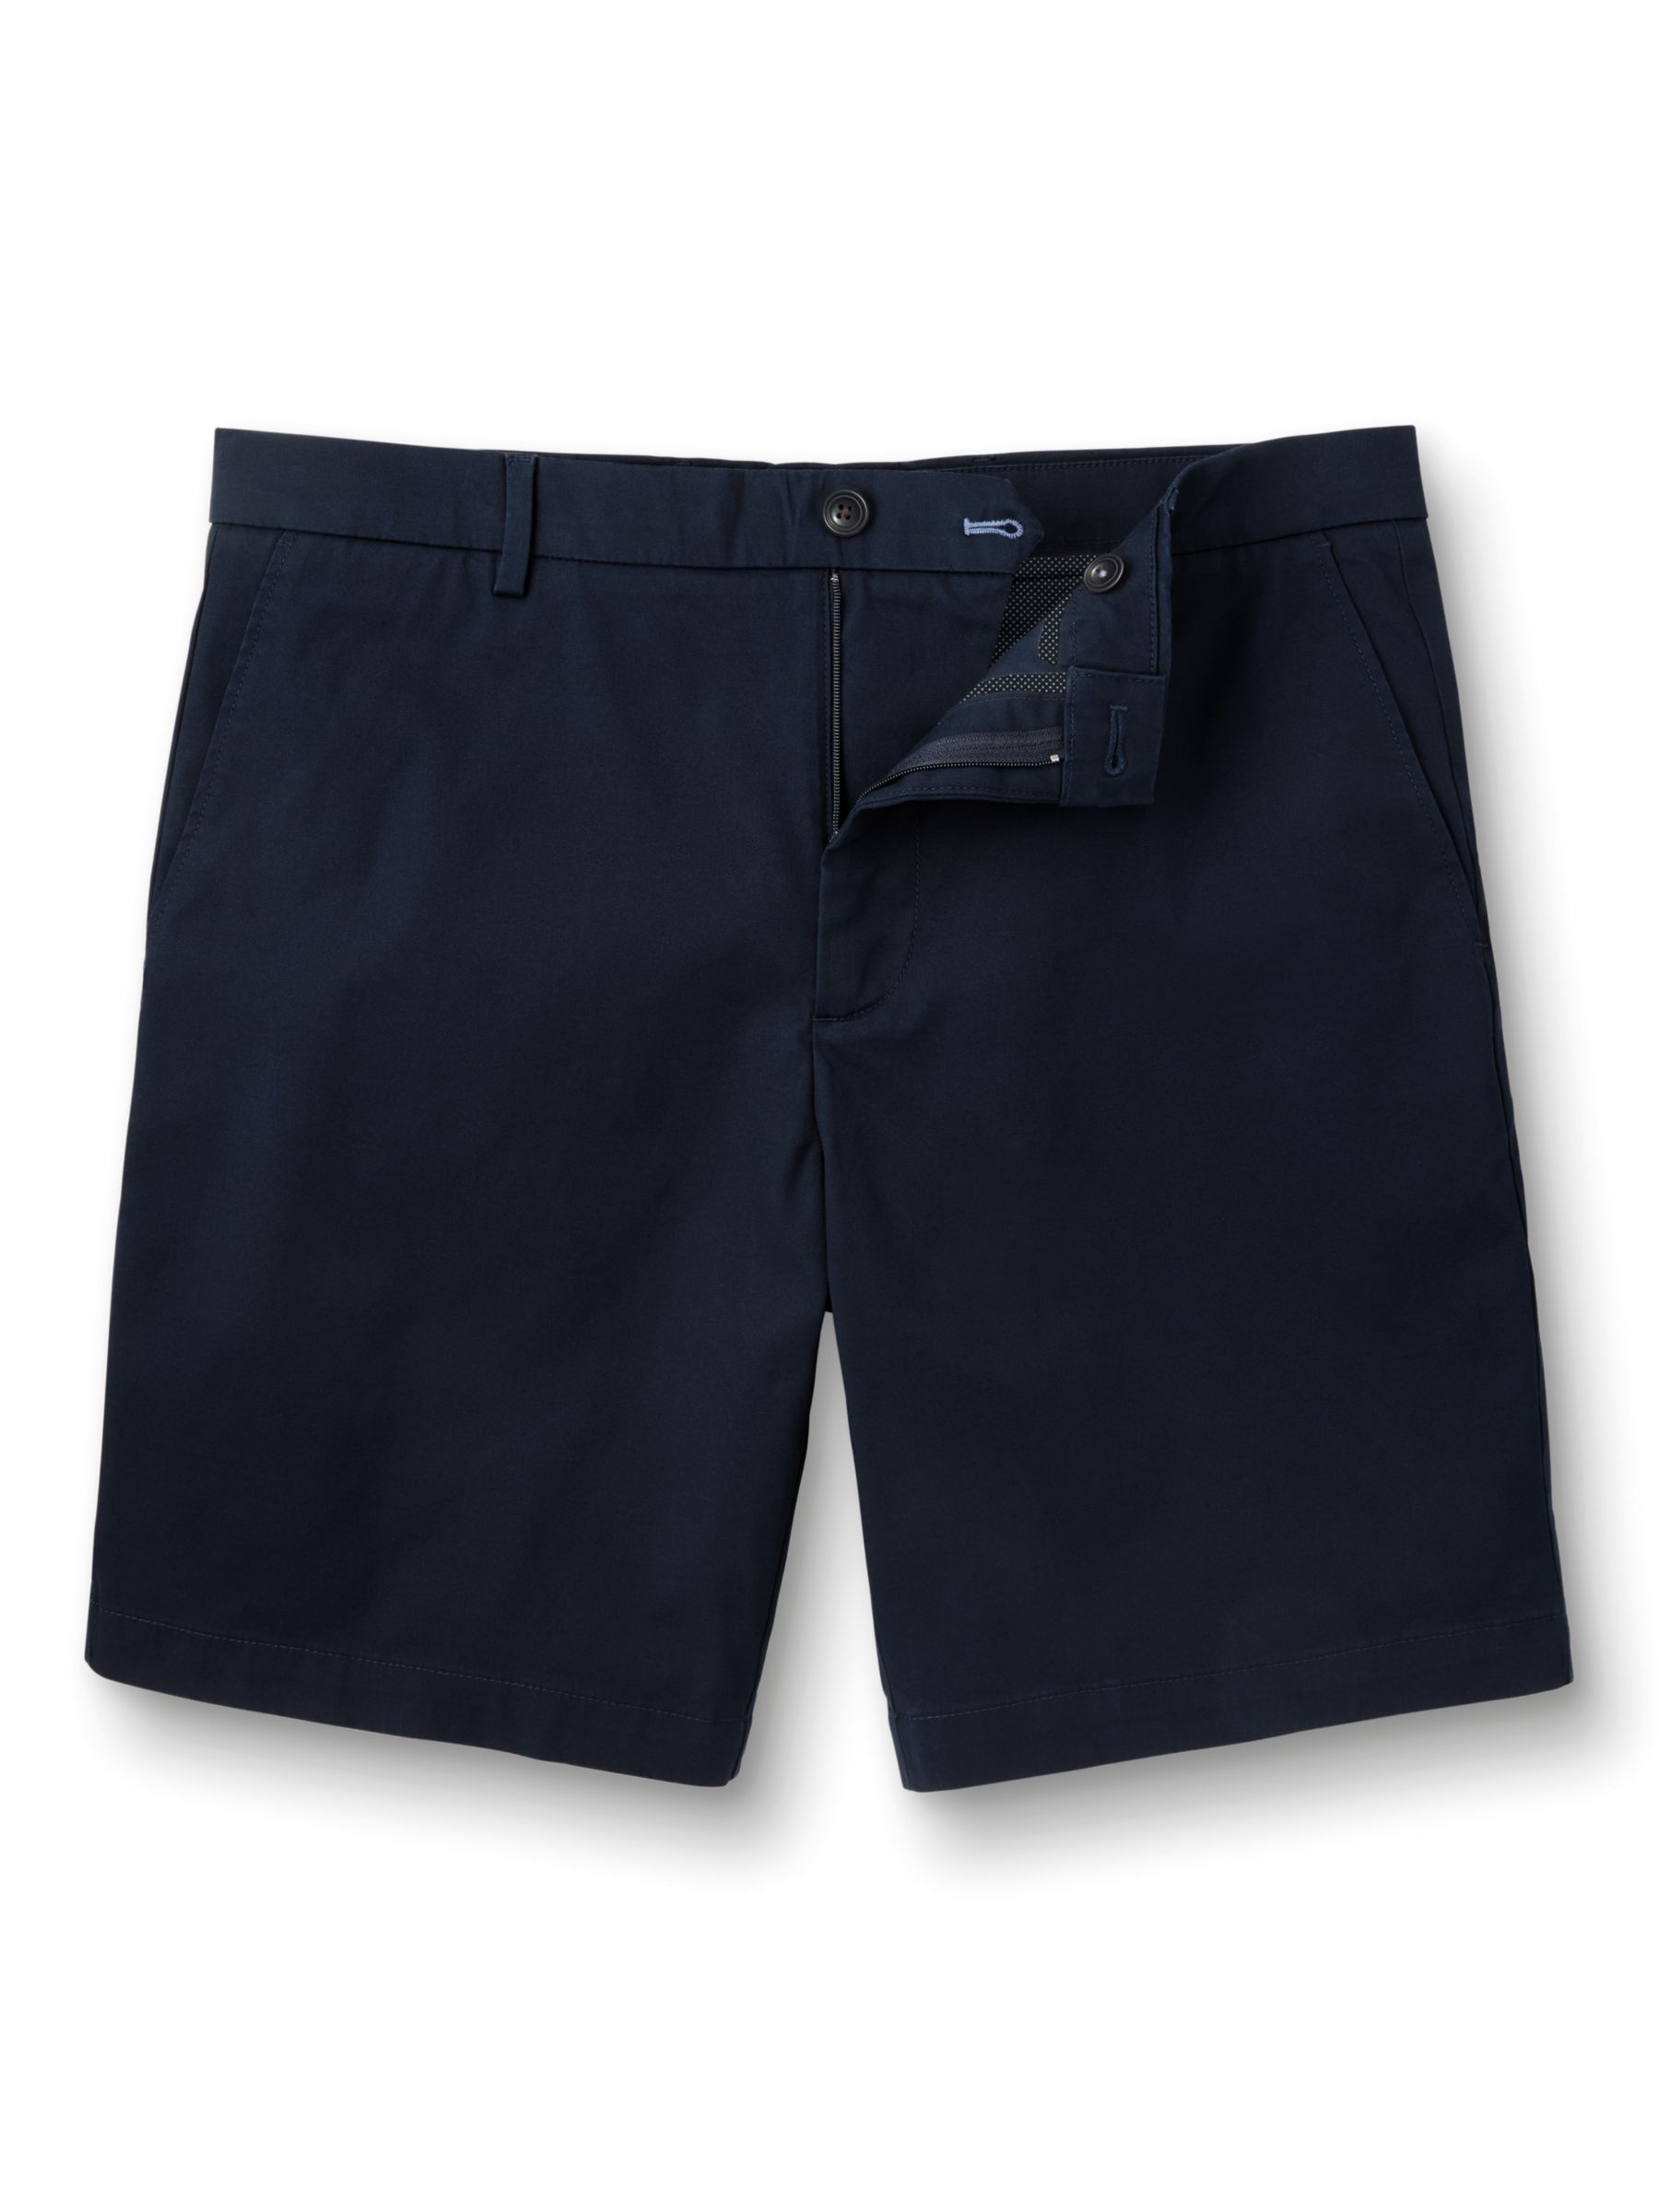 Charles Tyrwhitt Chino Cotton Shorts, Dark Navy, 30